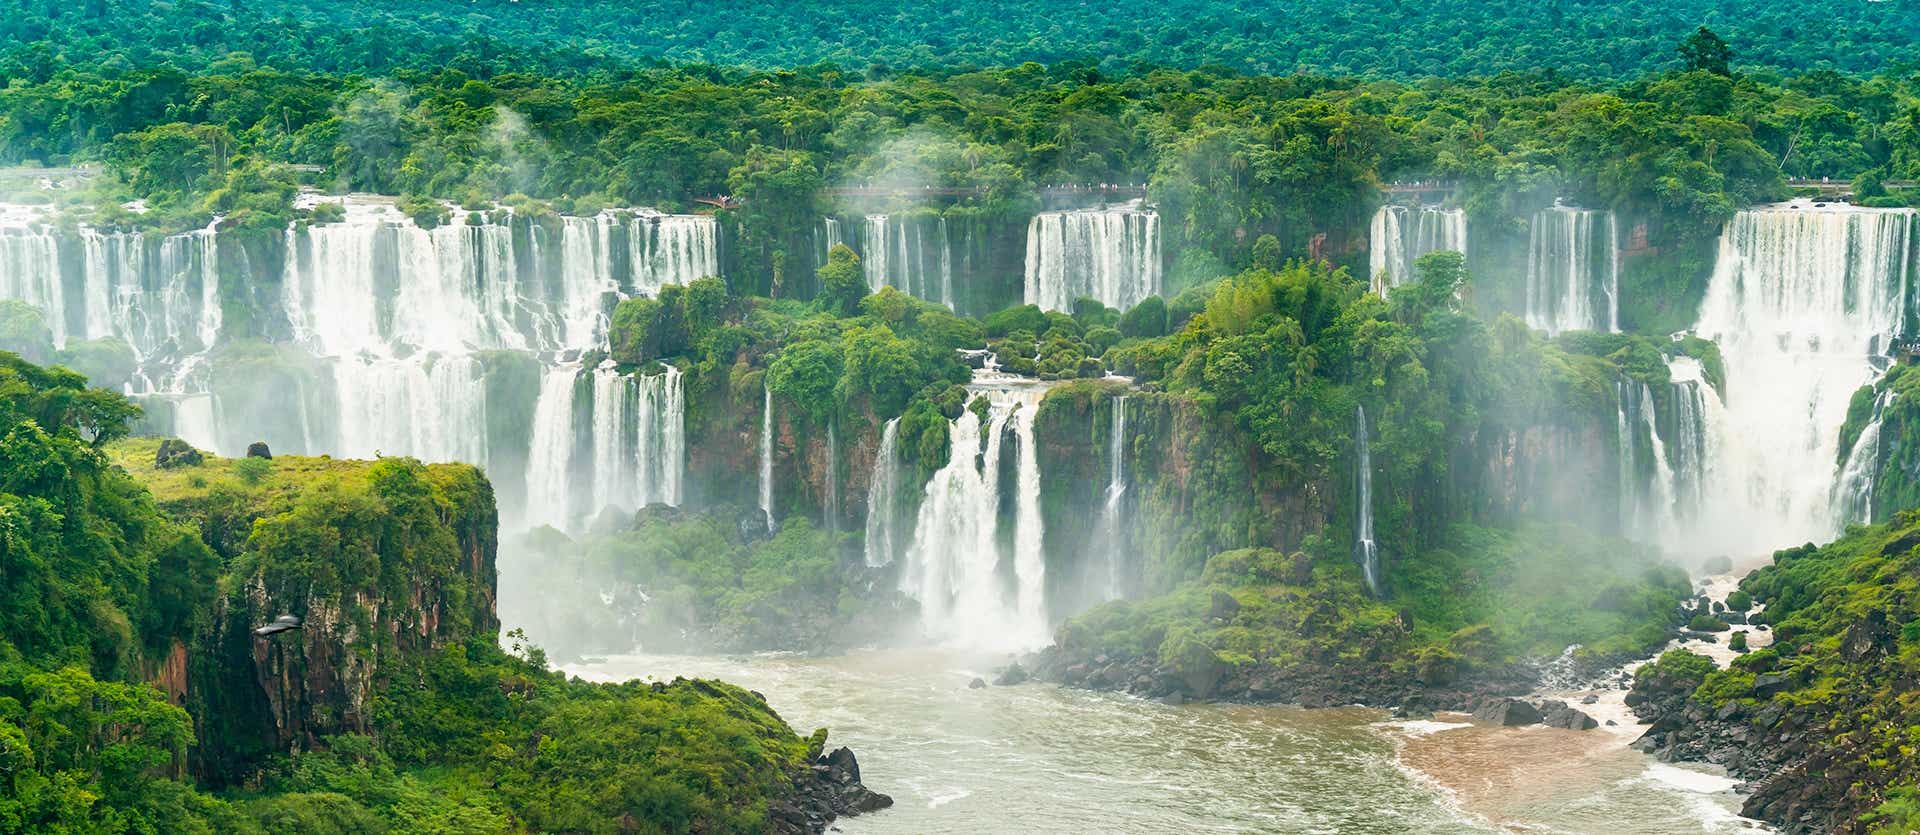 <span class="iconos separador"></span> Cataratas del Iguazú <span class="iconos separador"></span>